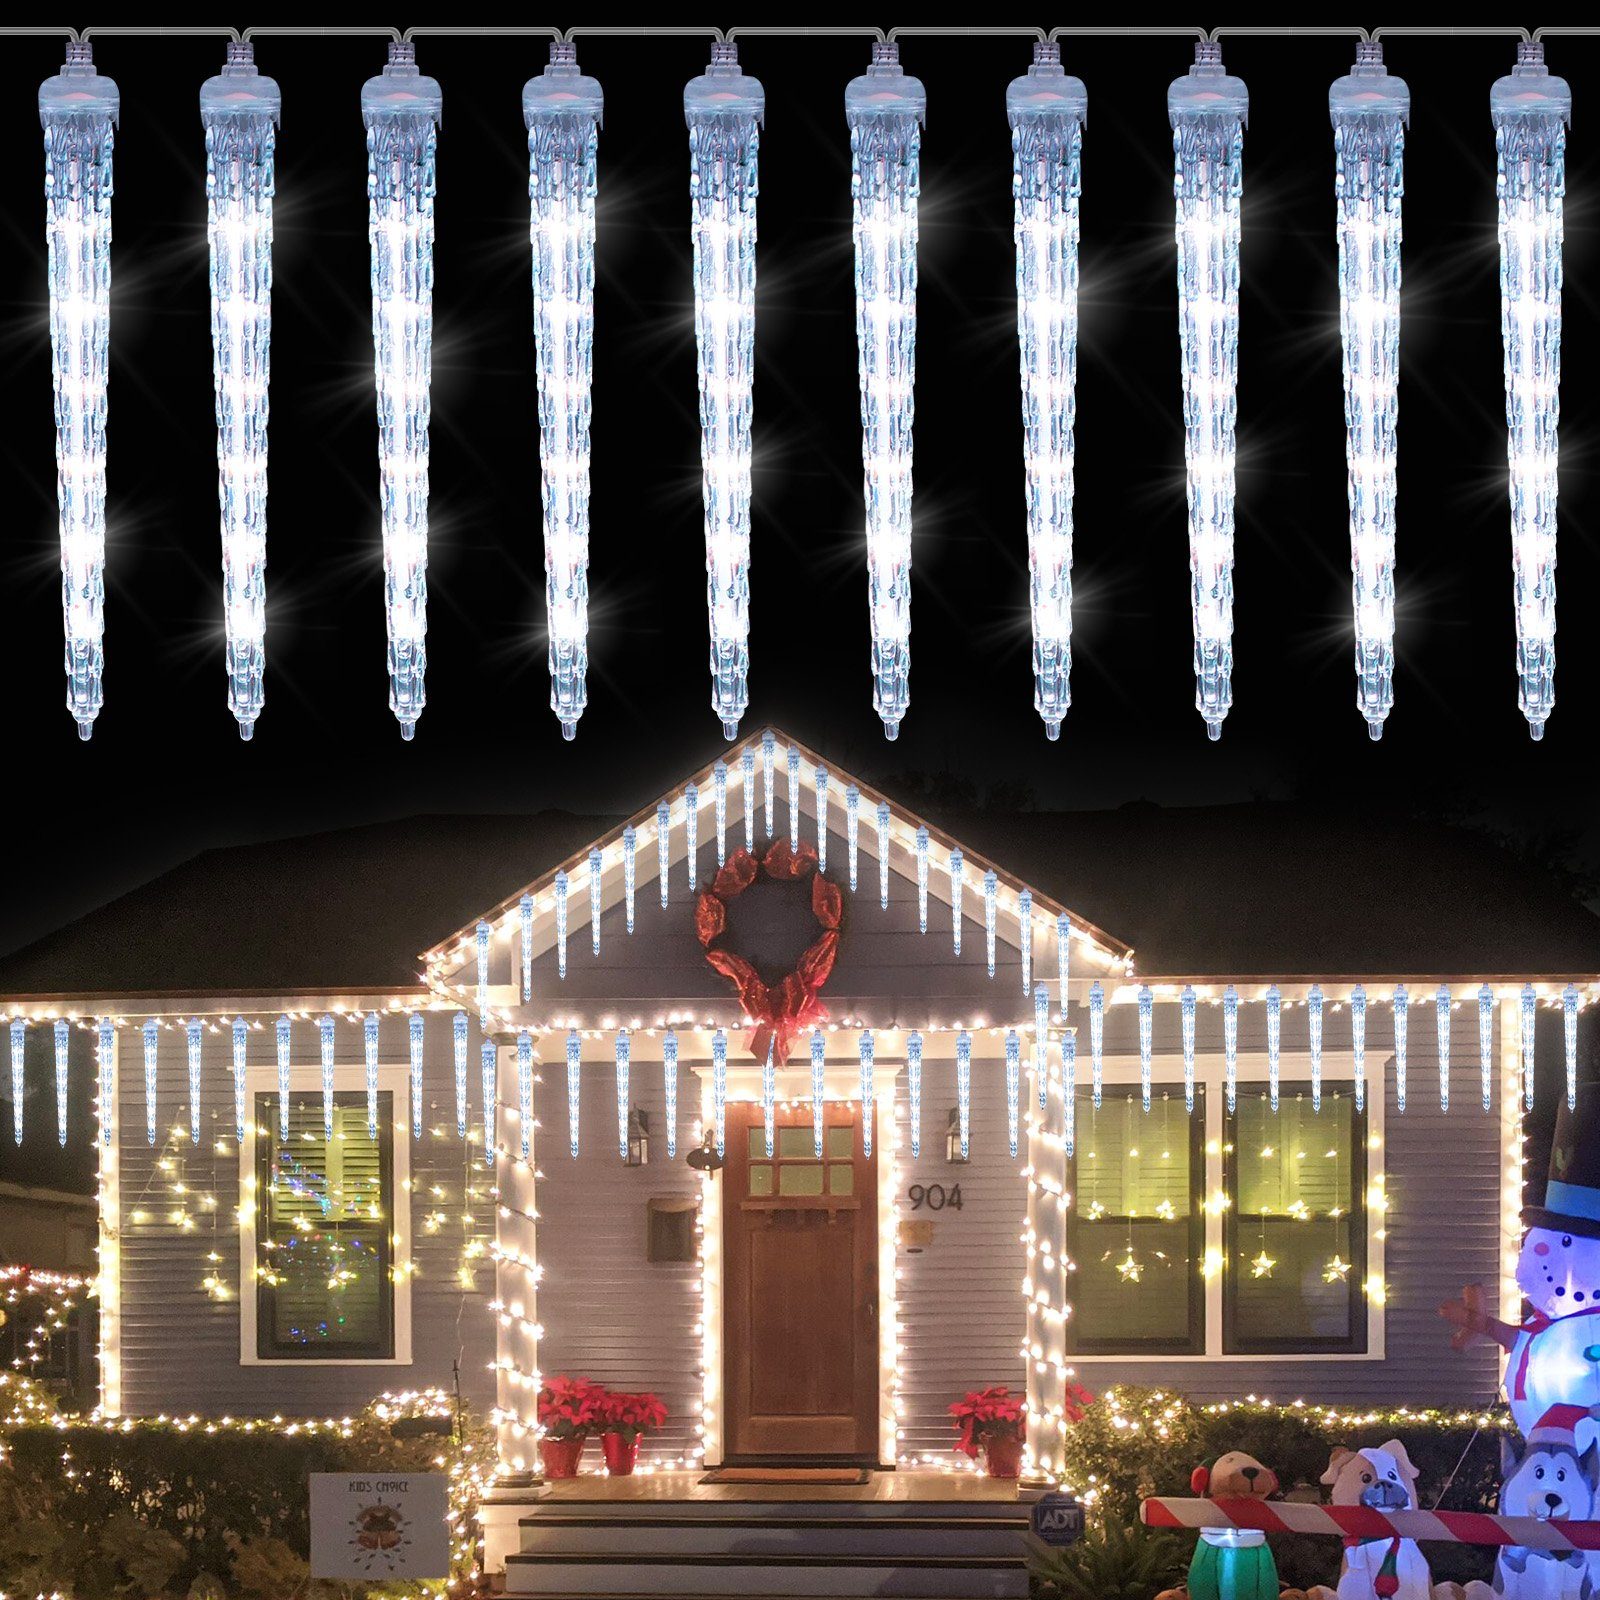 LED-Lichterkette Meteoritenschauer, Sunicol Weiß Außen/Garten/Hochzeit/Party für Weihnachtsbeleuchtung, Lichterregen, Wasserdichte, Schneefalleffekt Eiszapfen,